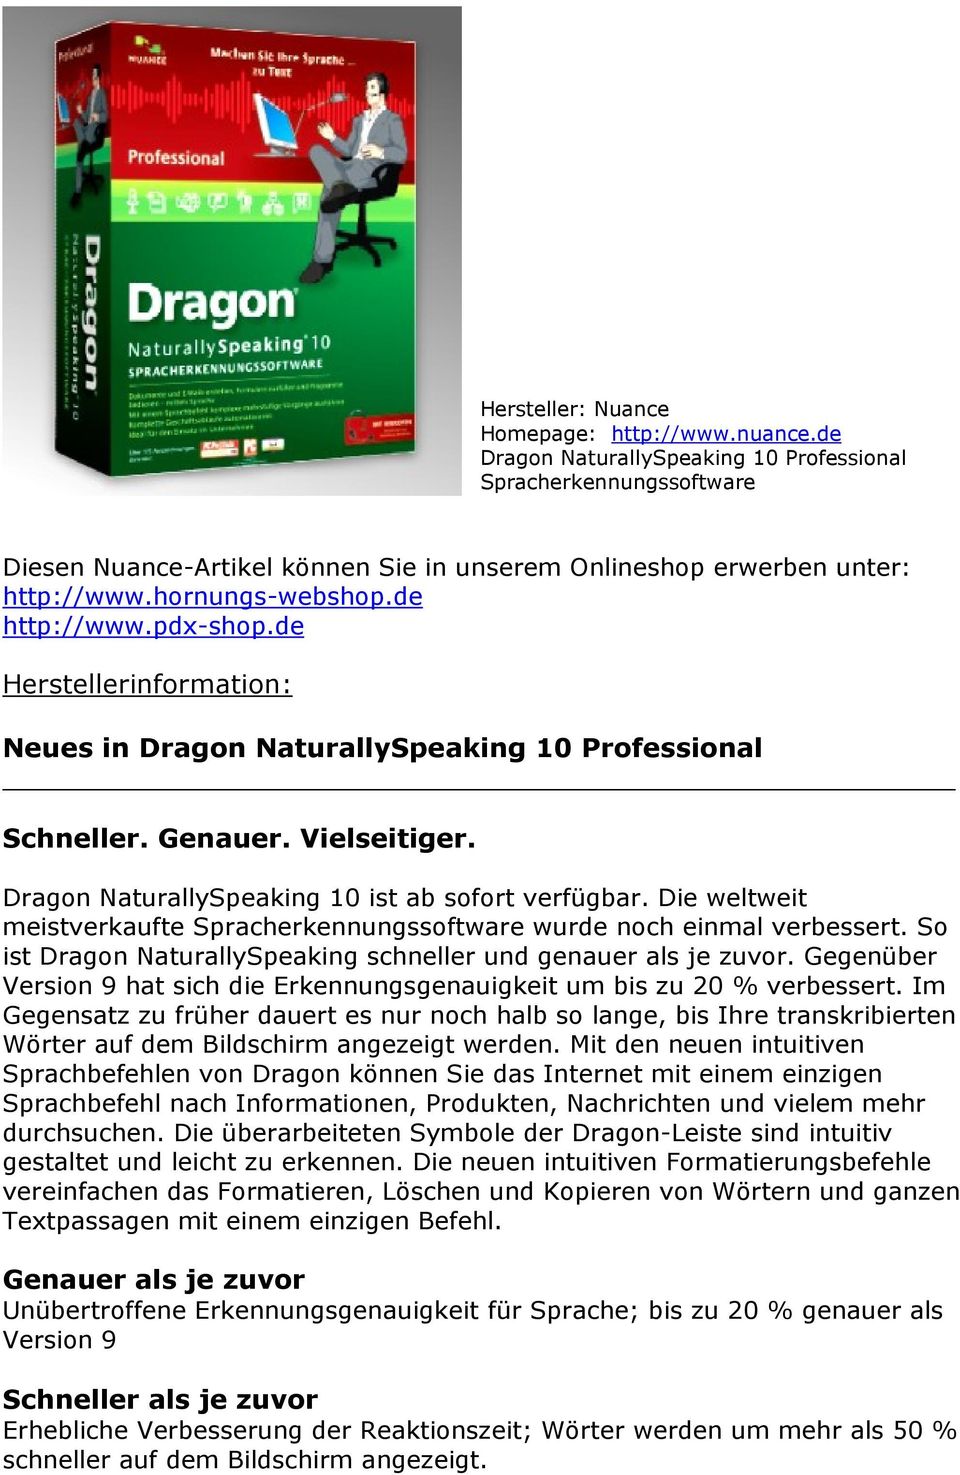 Dragon NaturallySpeaking 10 ist ab sofort verfügbar. Die weltweit meistverkaufte Spracherkennungssoftware wurde noch einmal verbessert.